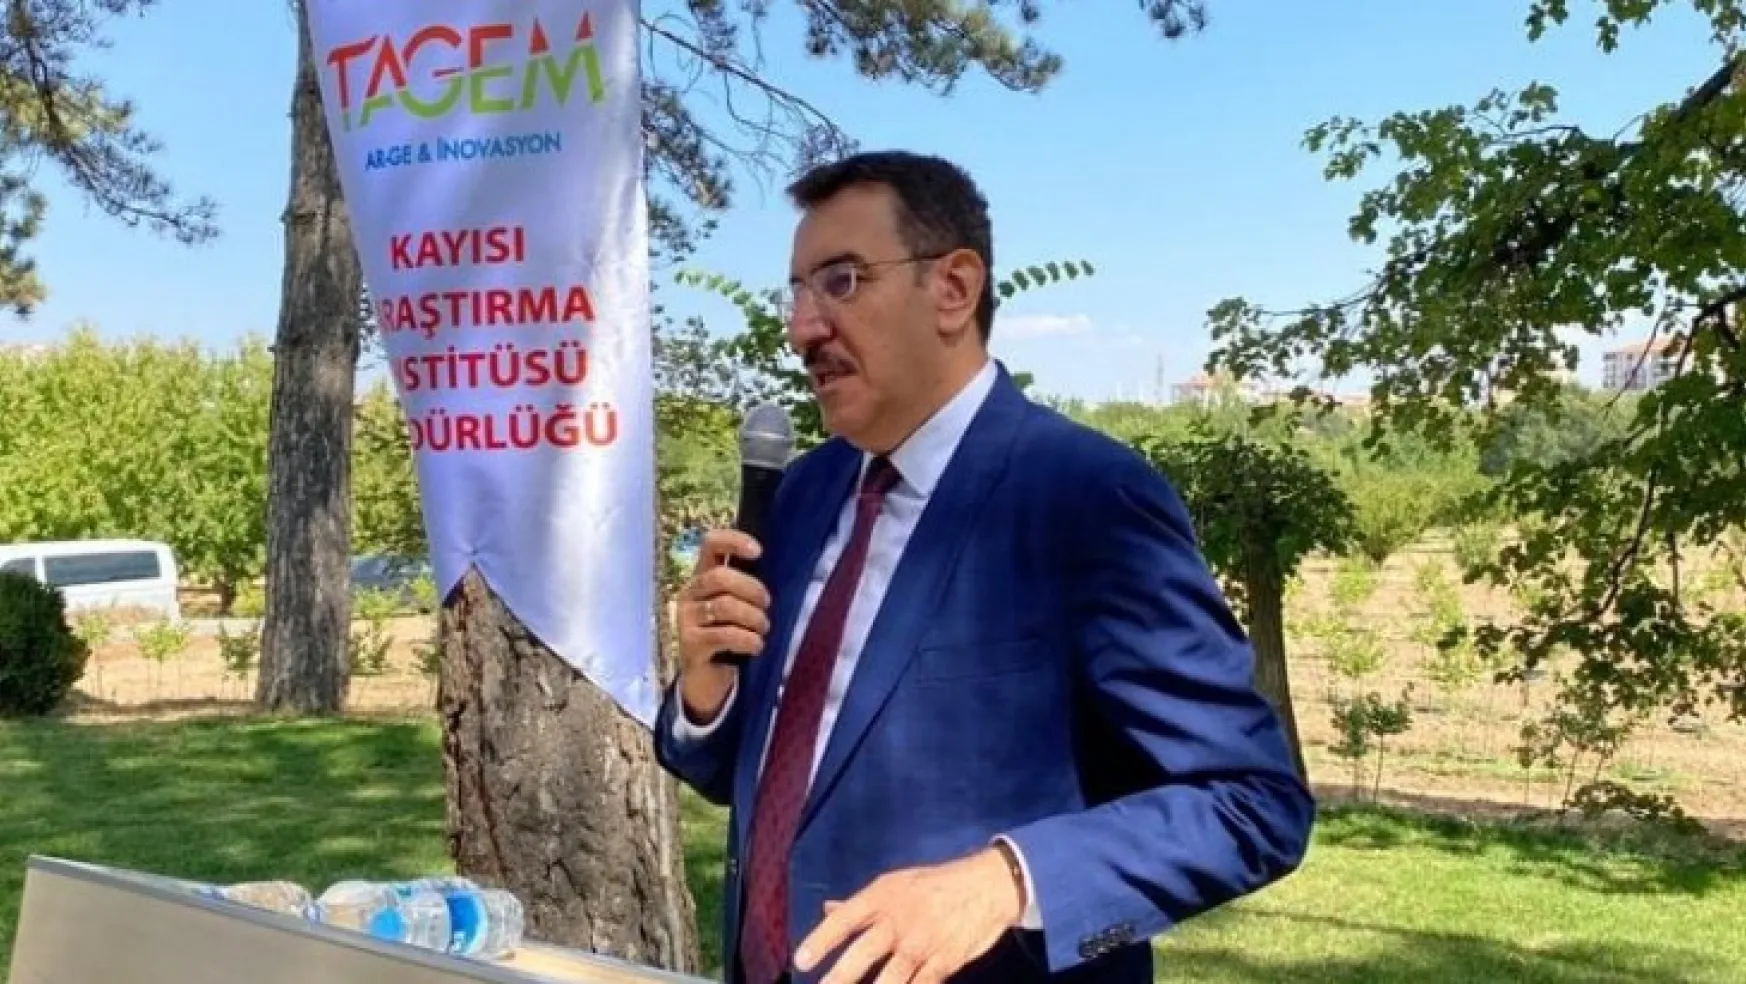 Milletvekili Tüfenkci : 'Birinci önceliğimiz kayısı'